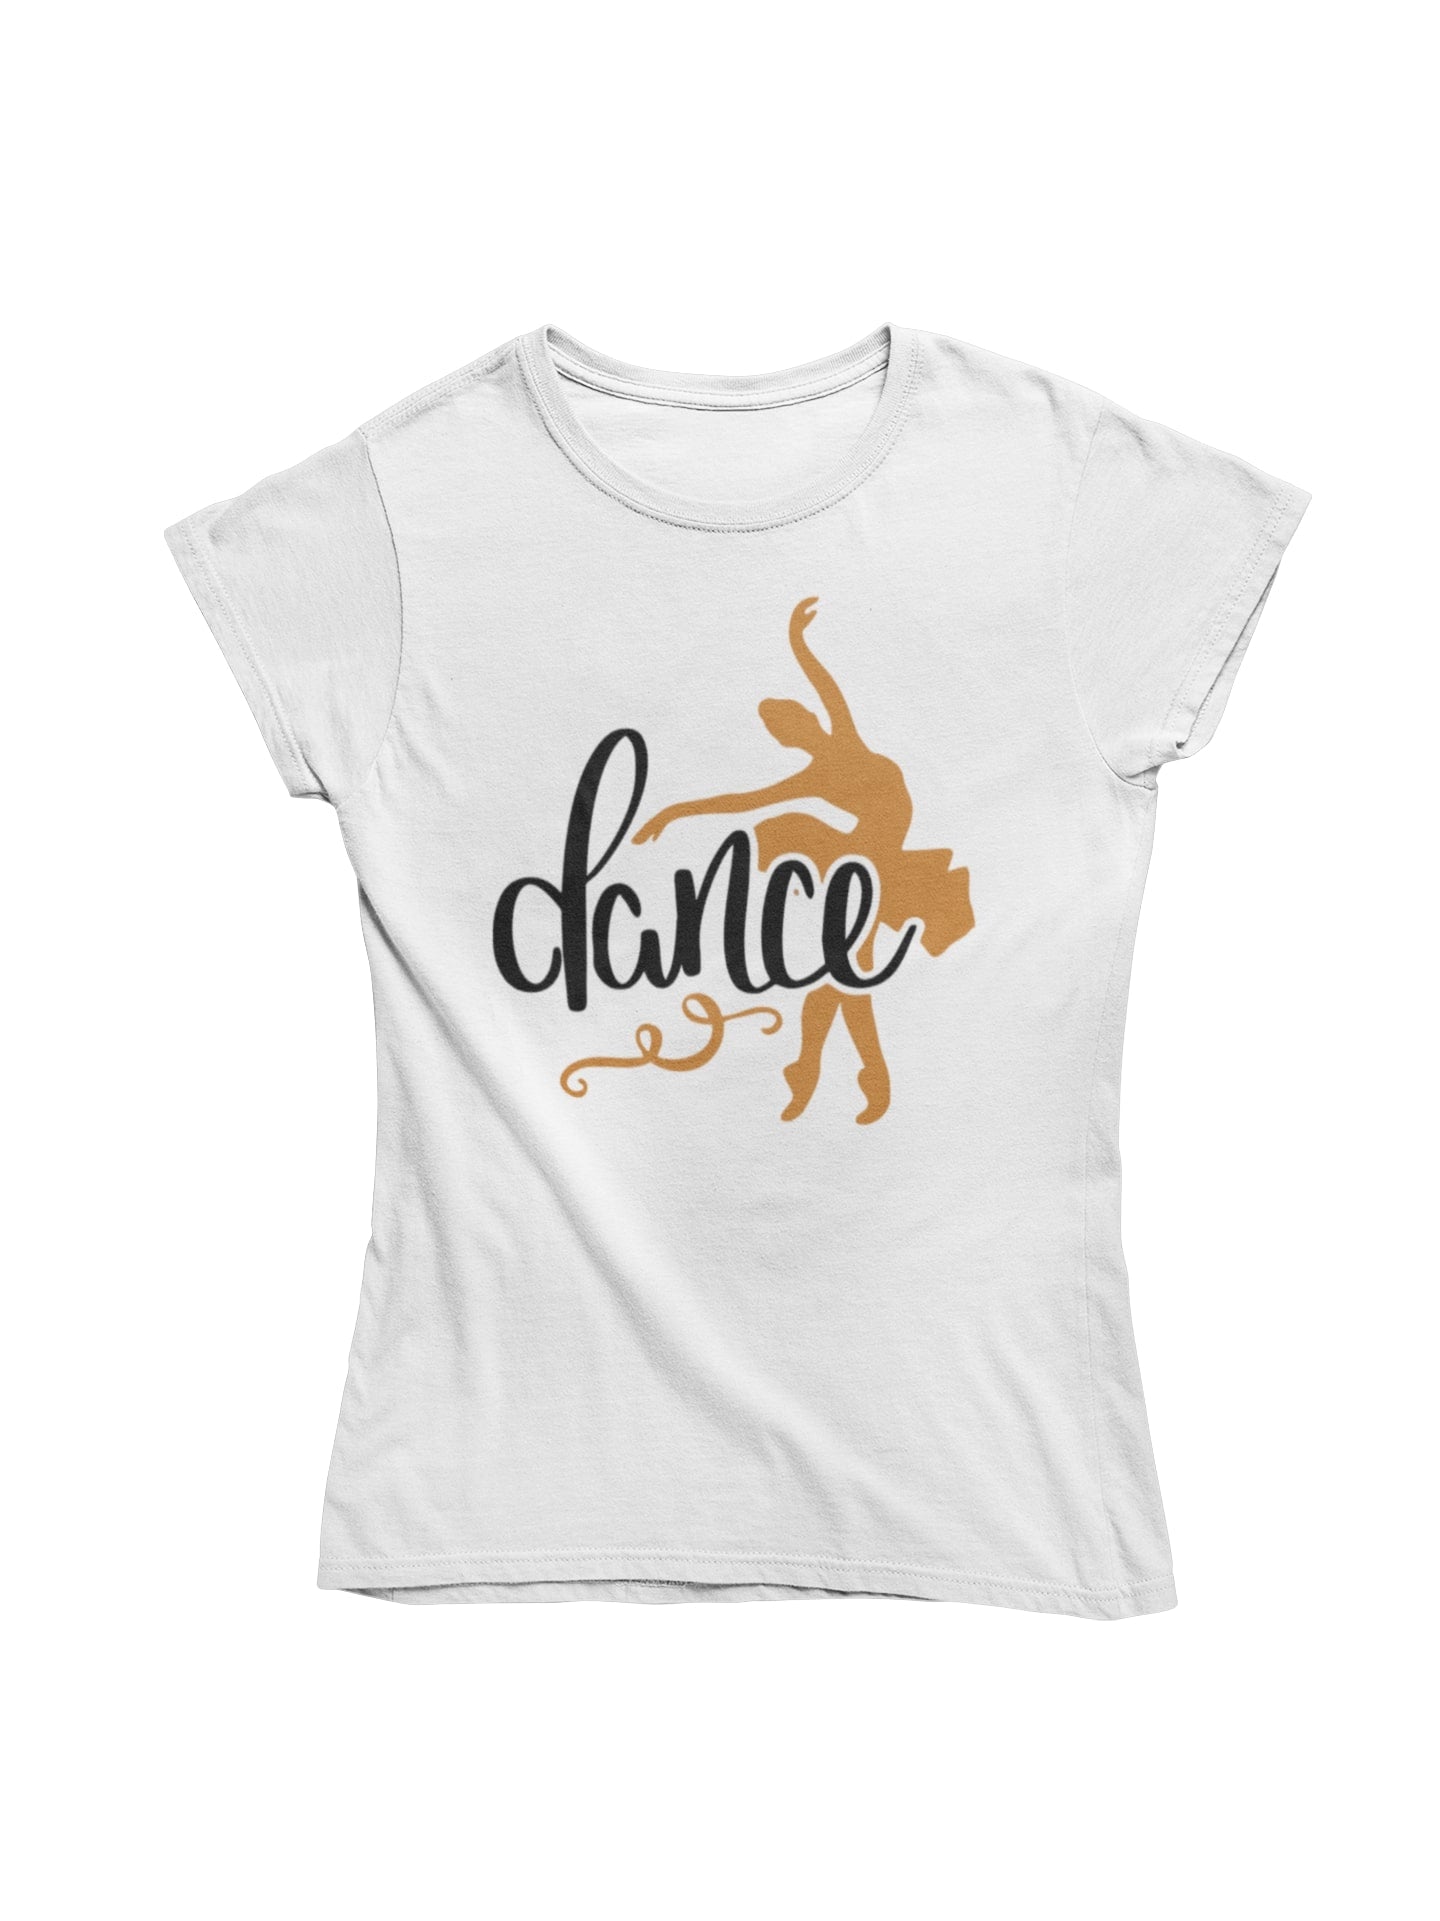 thelegalgang,Ballet Dance Inspired T shirt for Women,WOMEN.